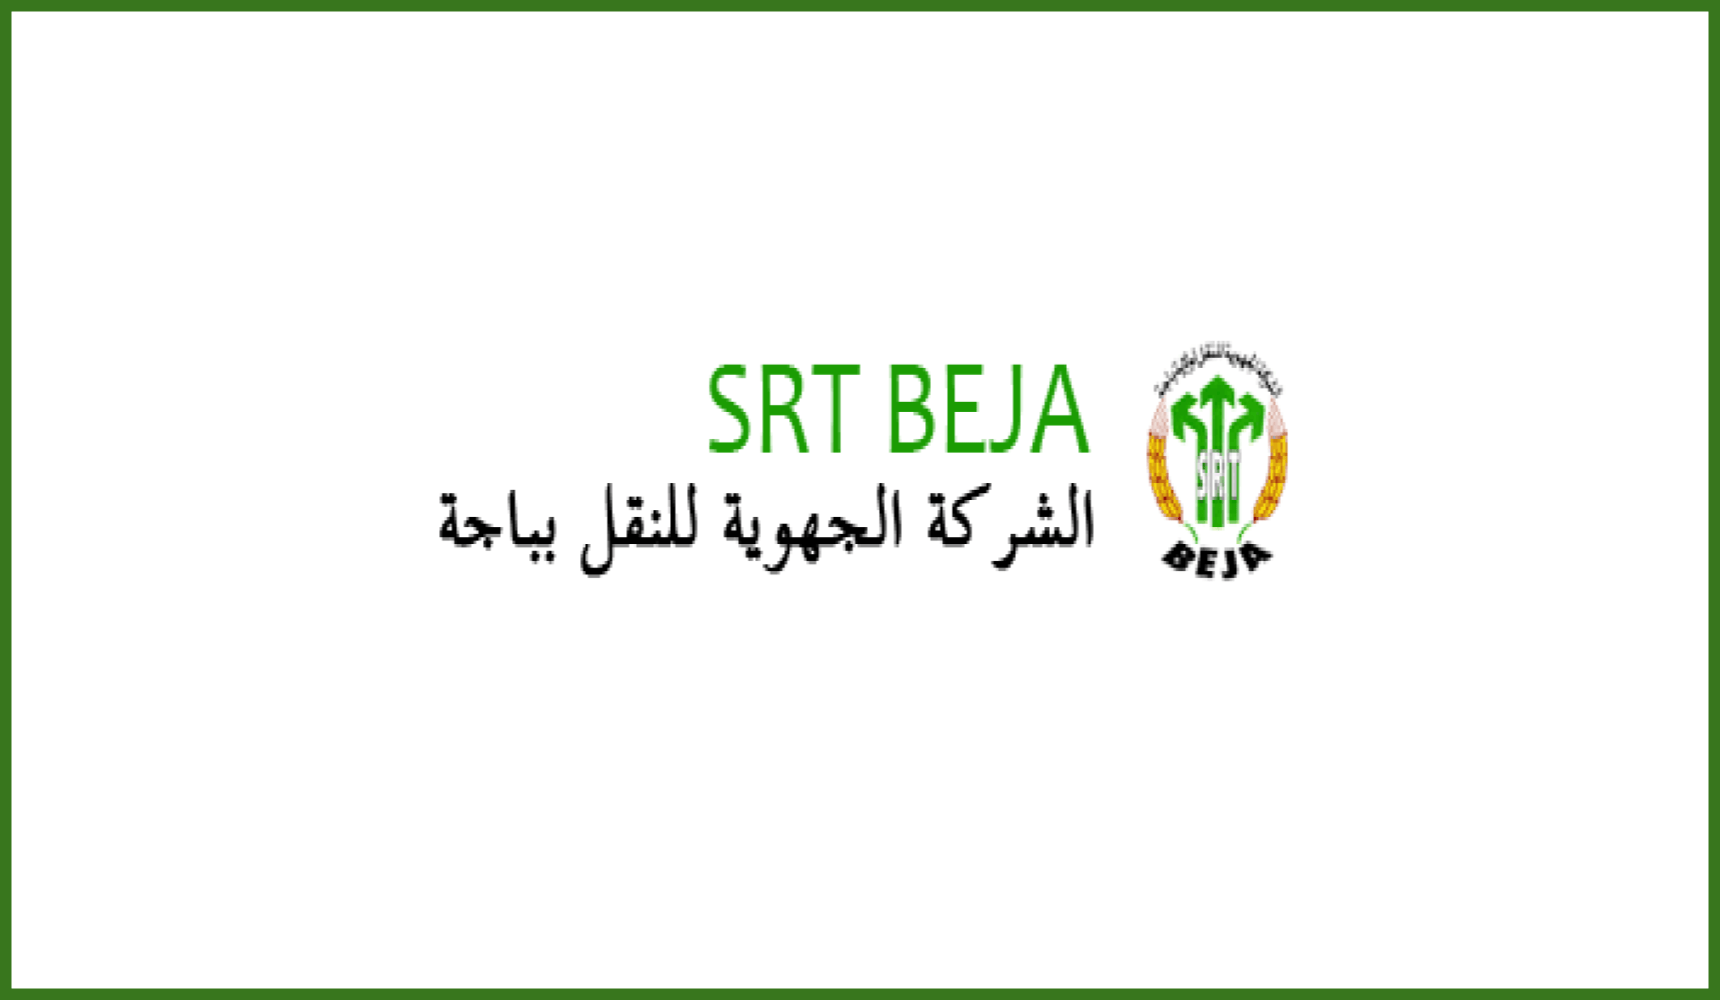 Tunisie- Suspension de l’activité de toutes les lignes de la société régionale de transport de beja